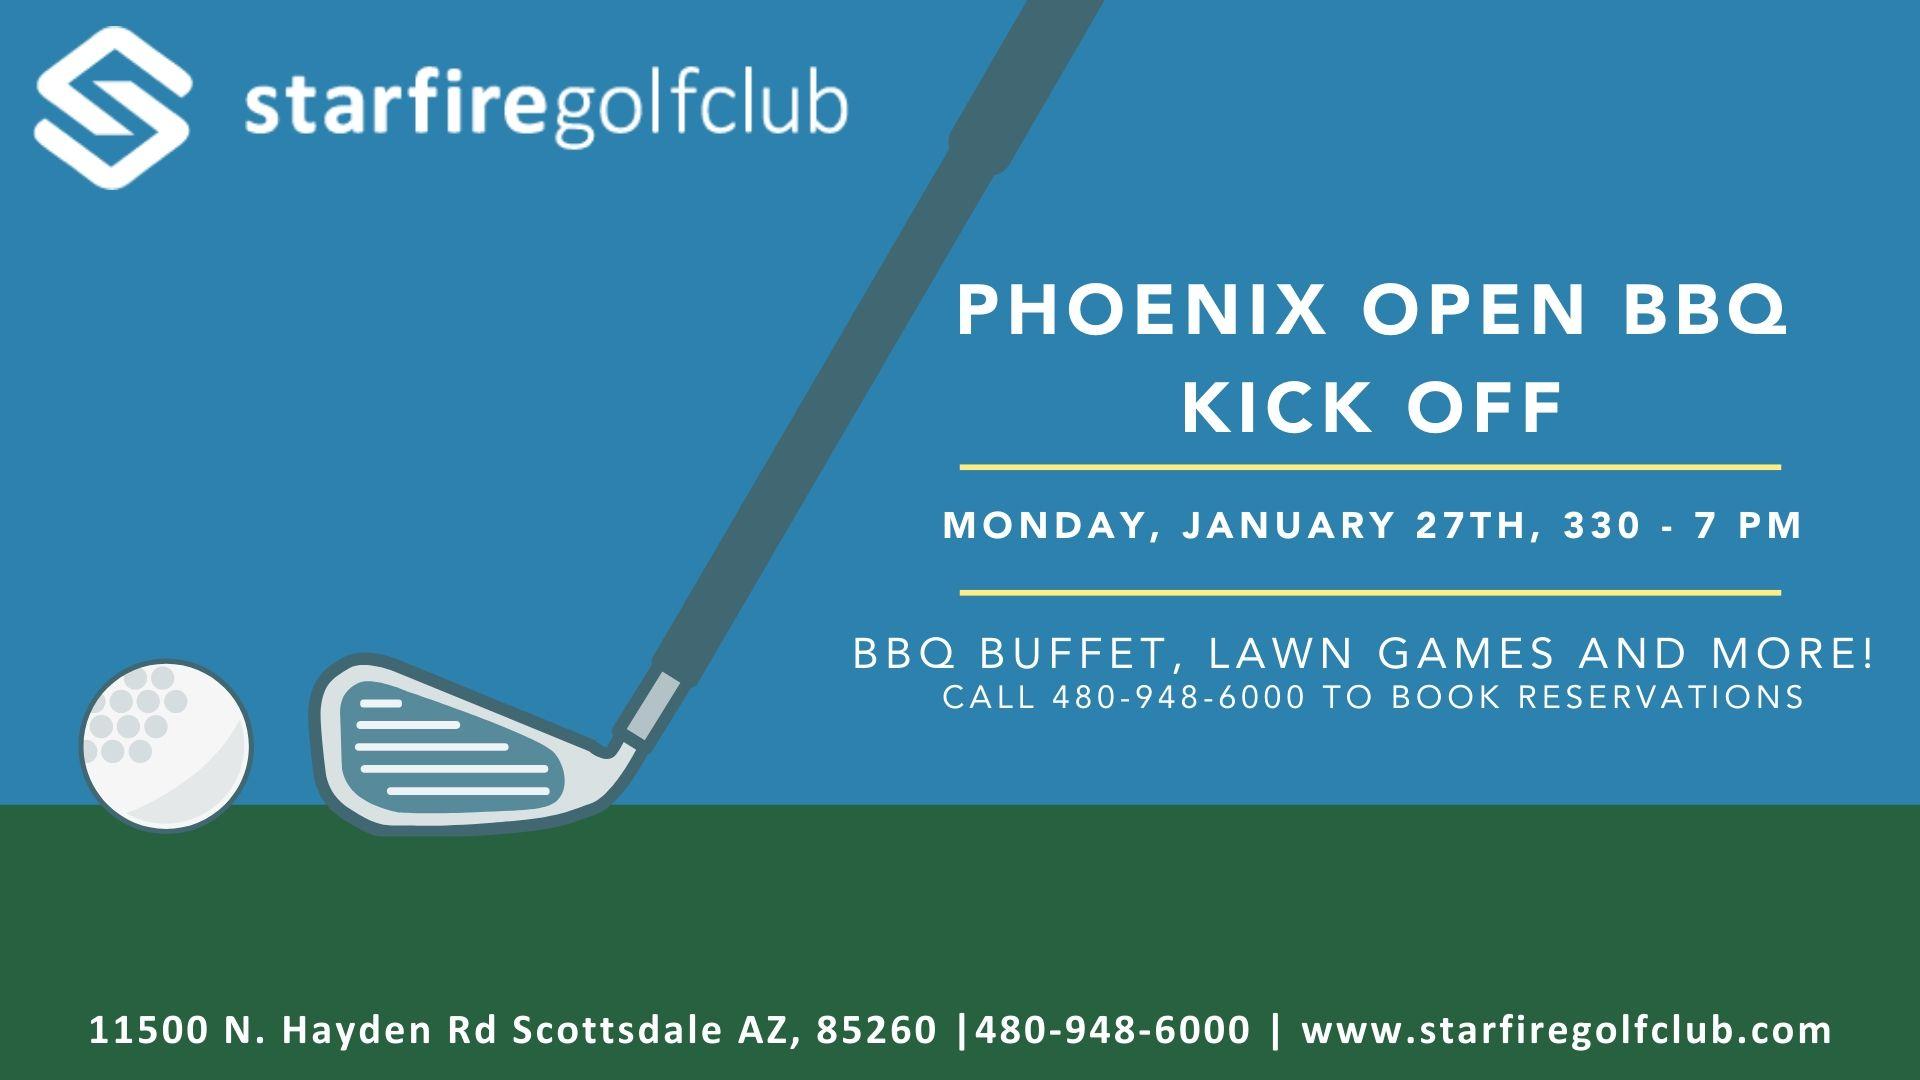 Starfire Golf Club's Phoenix Open BBQ Kickoff